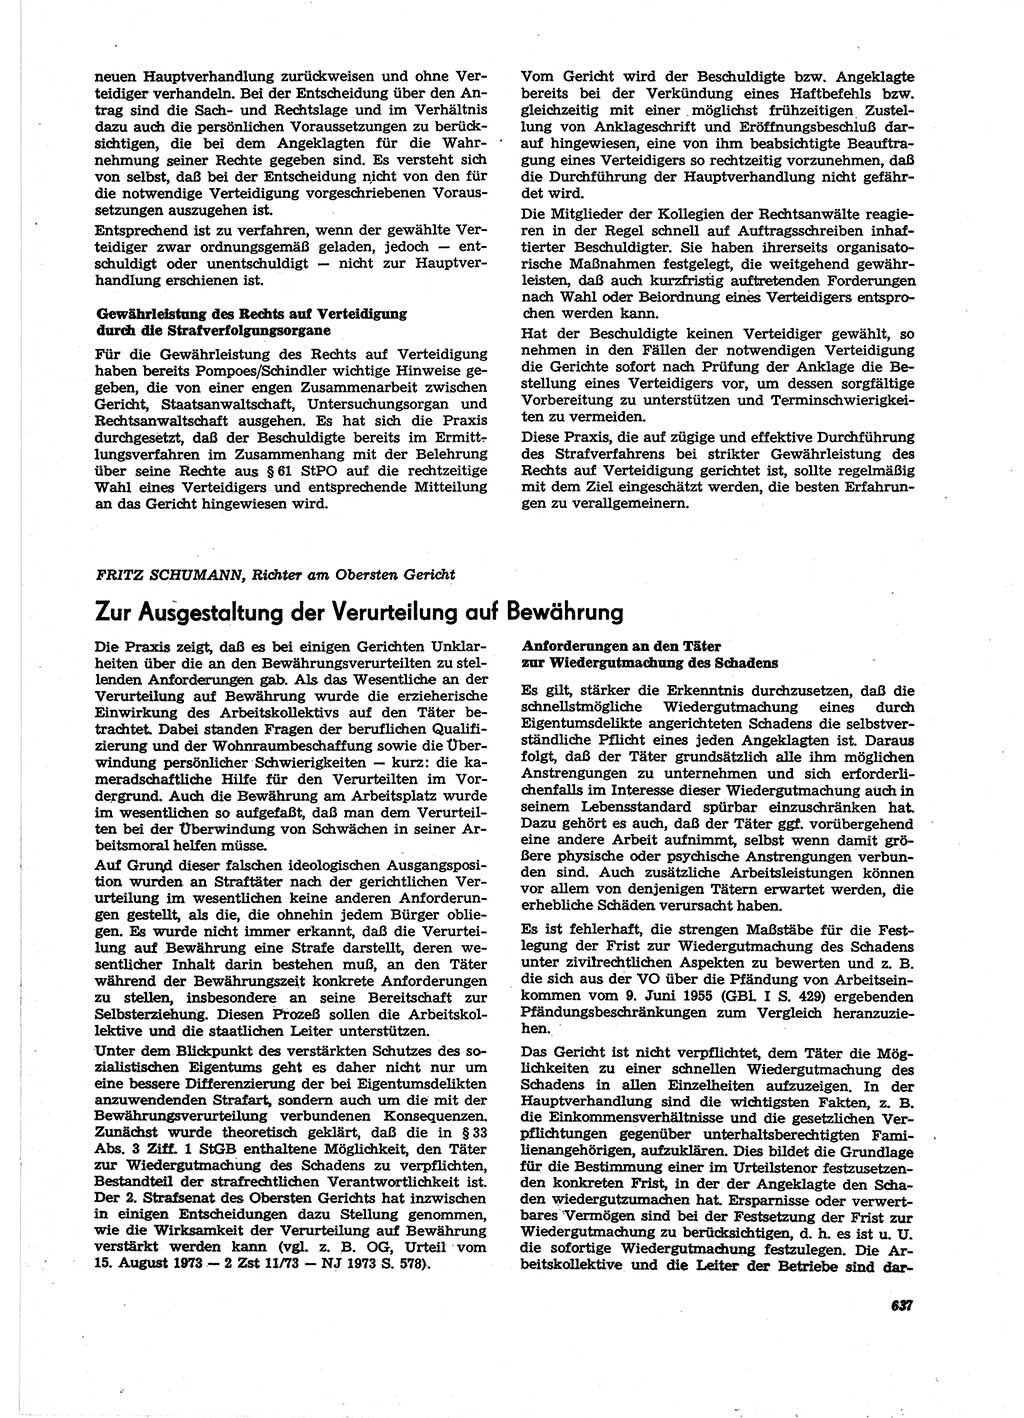 Neue Justiz (NJ), Zeitschrift für Recht und Rechtswissenschaft [Deutsche Demokratische Republik (DDR)], 27. Jahrgang 1973, Seite 637 (NJ DDR 1973, S. 637)